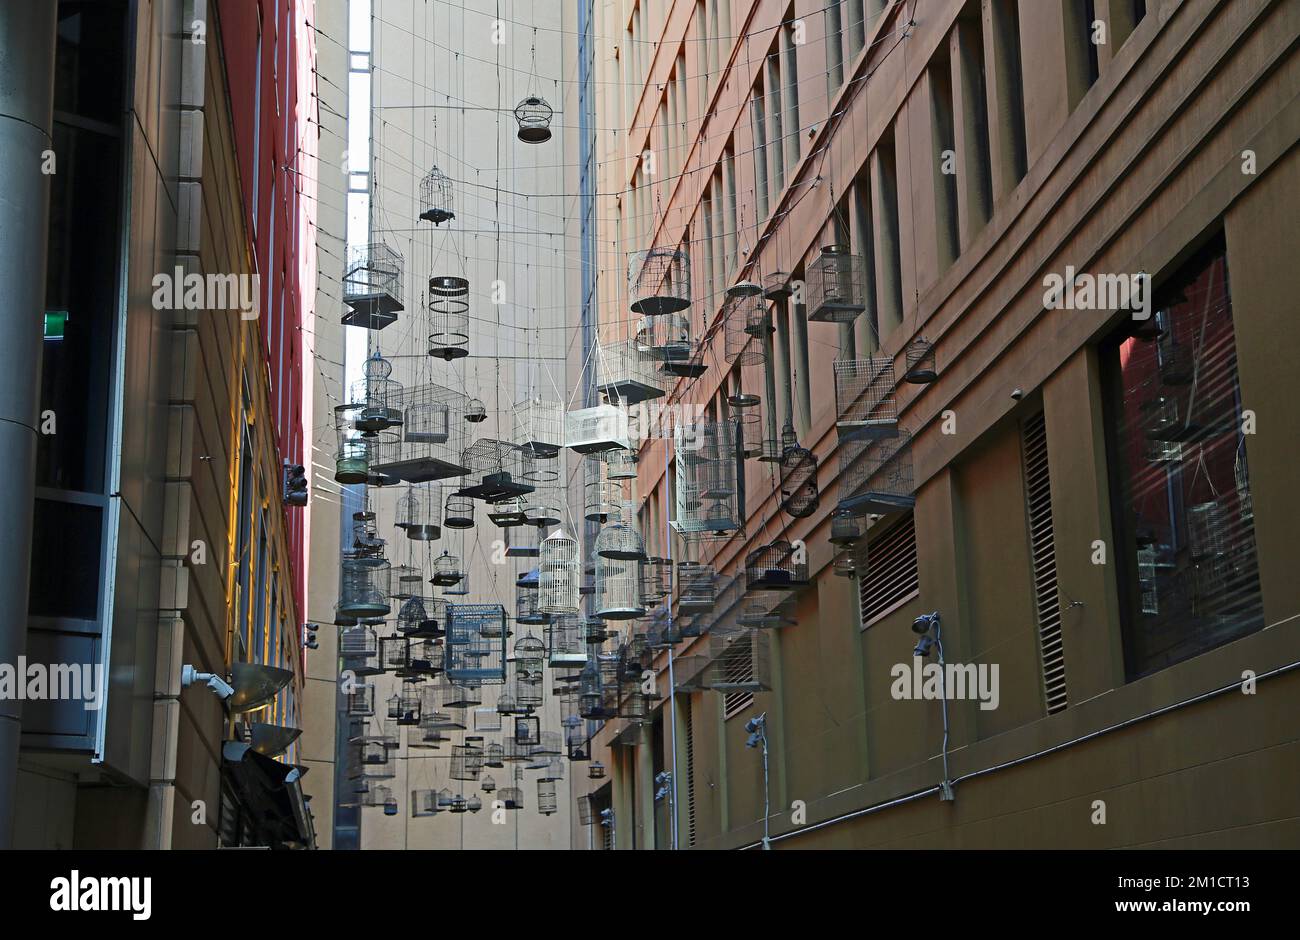 Forgotten songs installation - Sydney, Australia Stock Photo